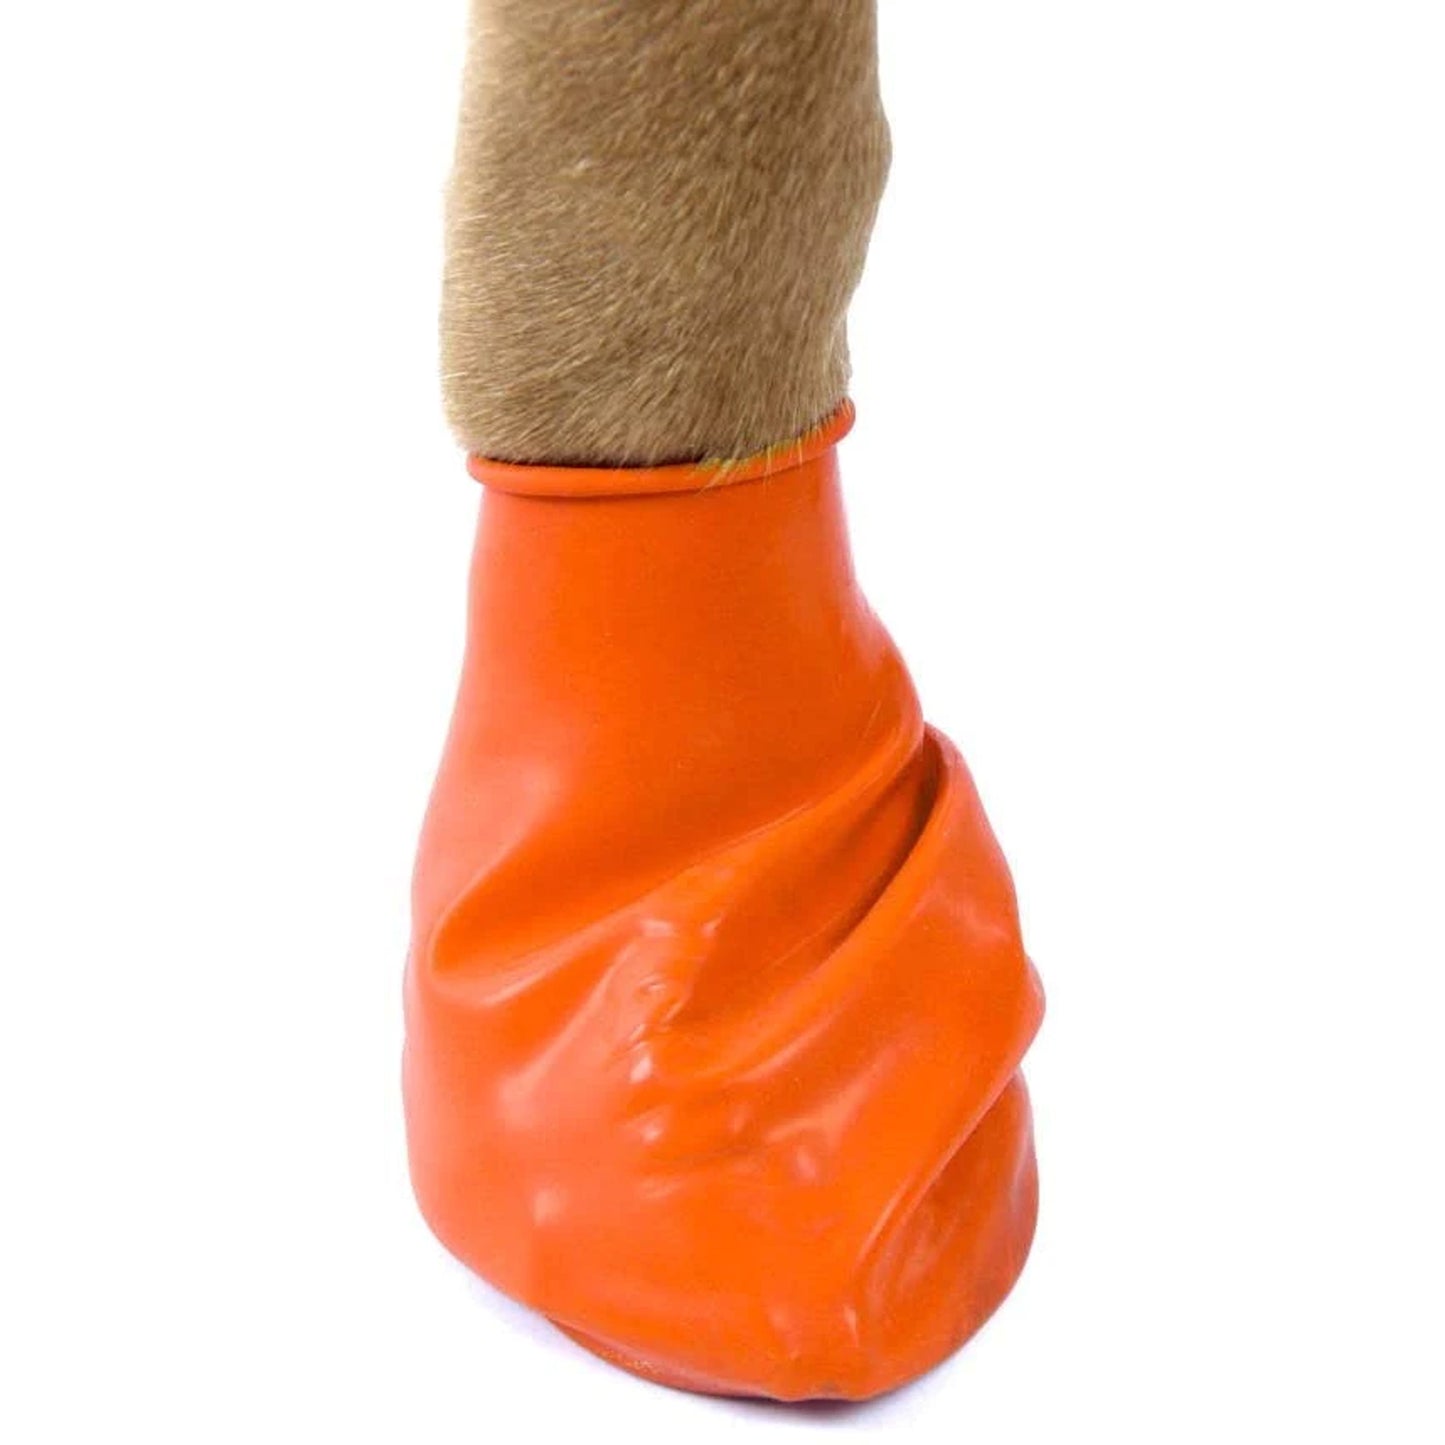 Pawz Waterproof Dog Boots - X Small - Orange 12 PCS